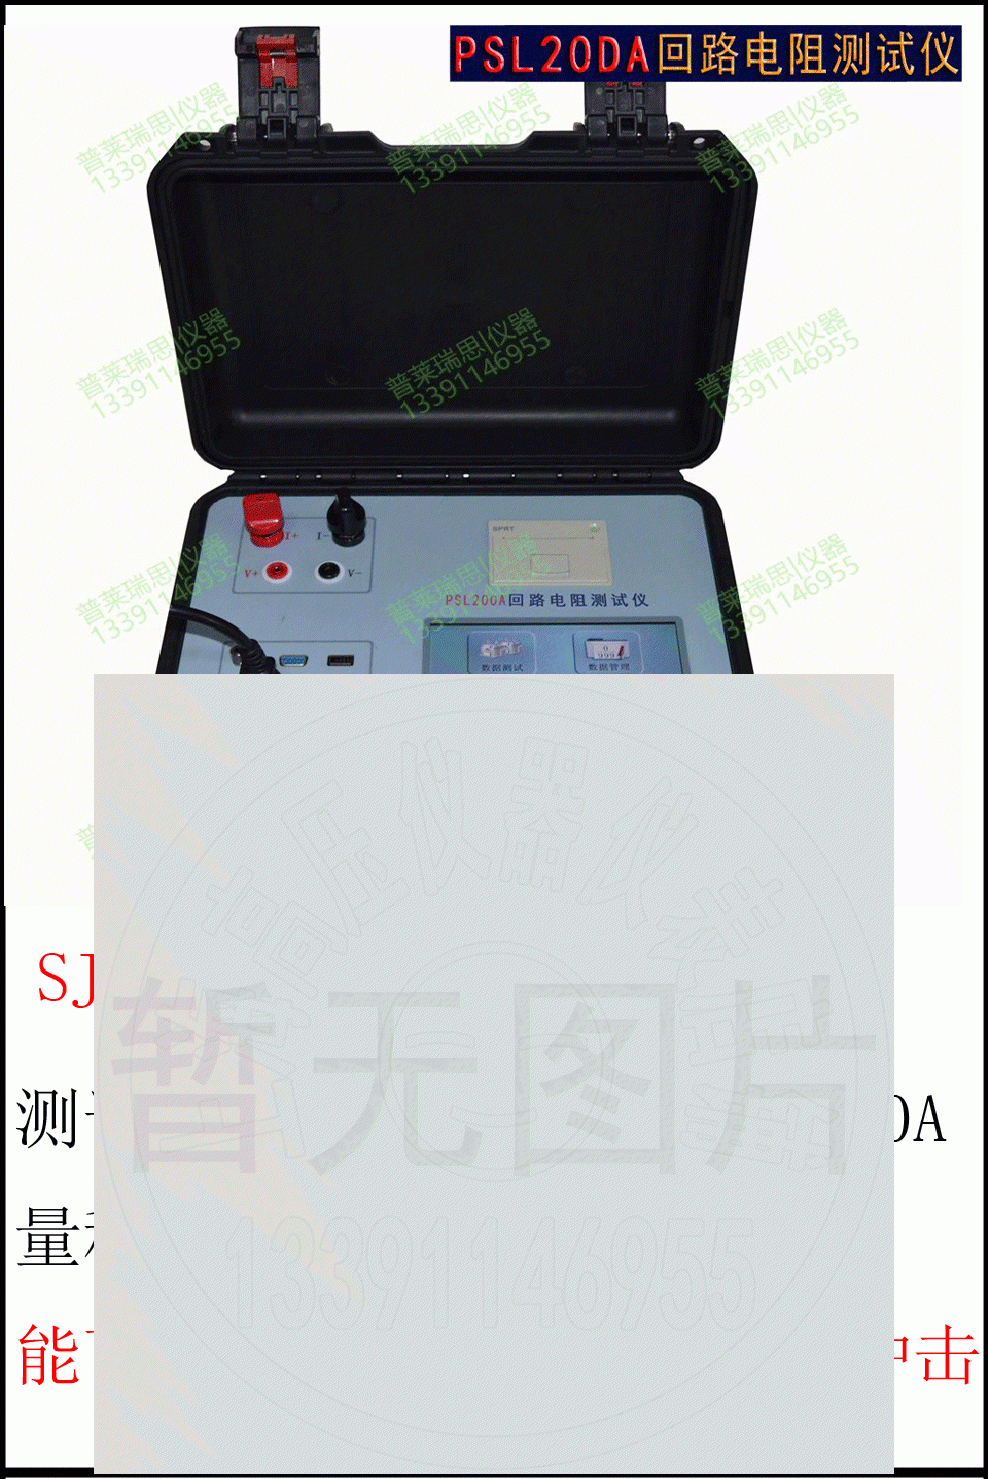 SJL100A/SJL200A 智能型回路电阻测试
仪 